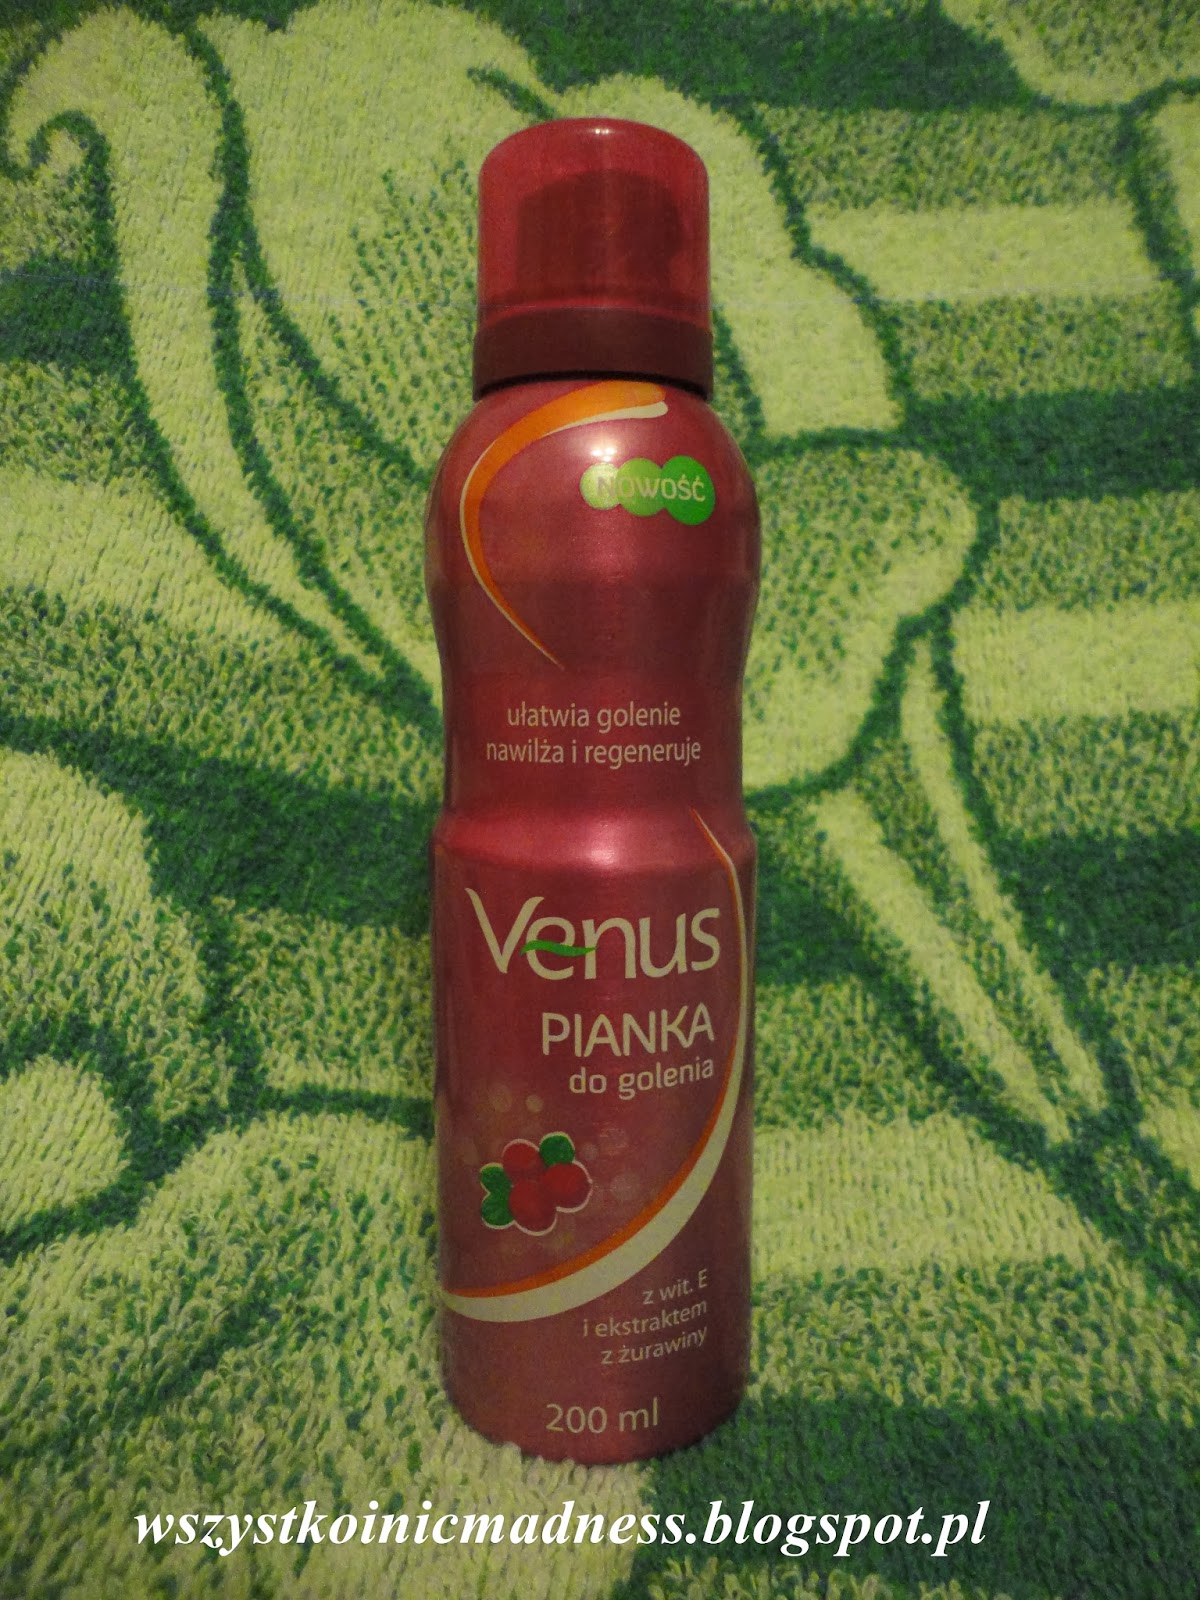 Venus pianka do golenia